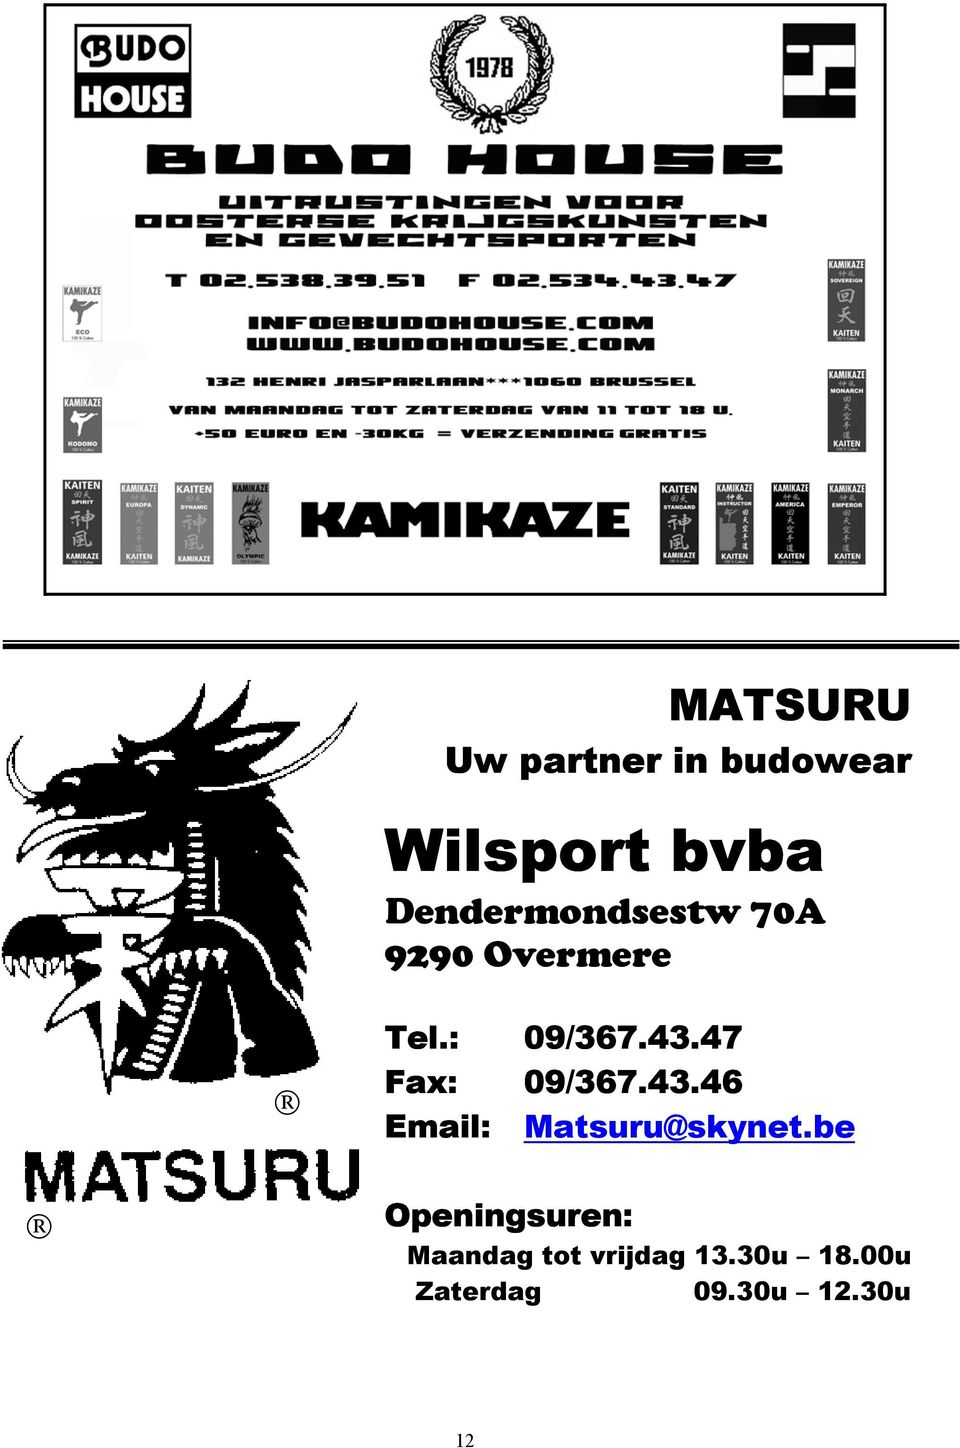 47 Fax: 09/367.43.46 Email: Matsuru@skynet.